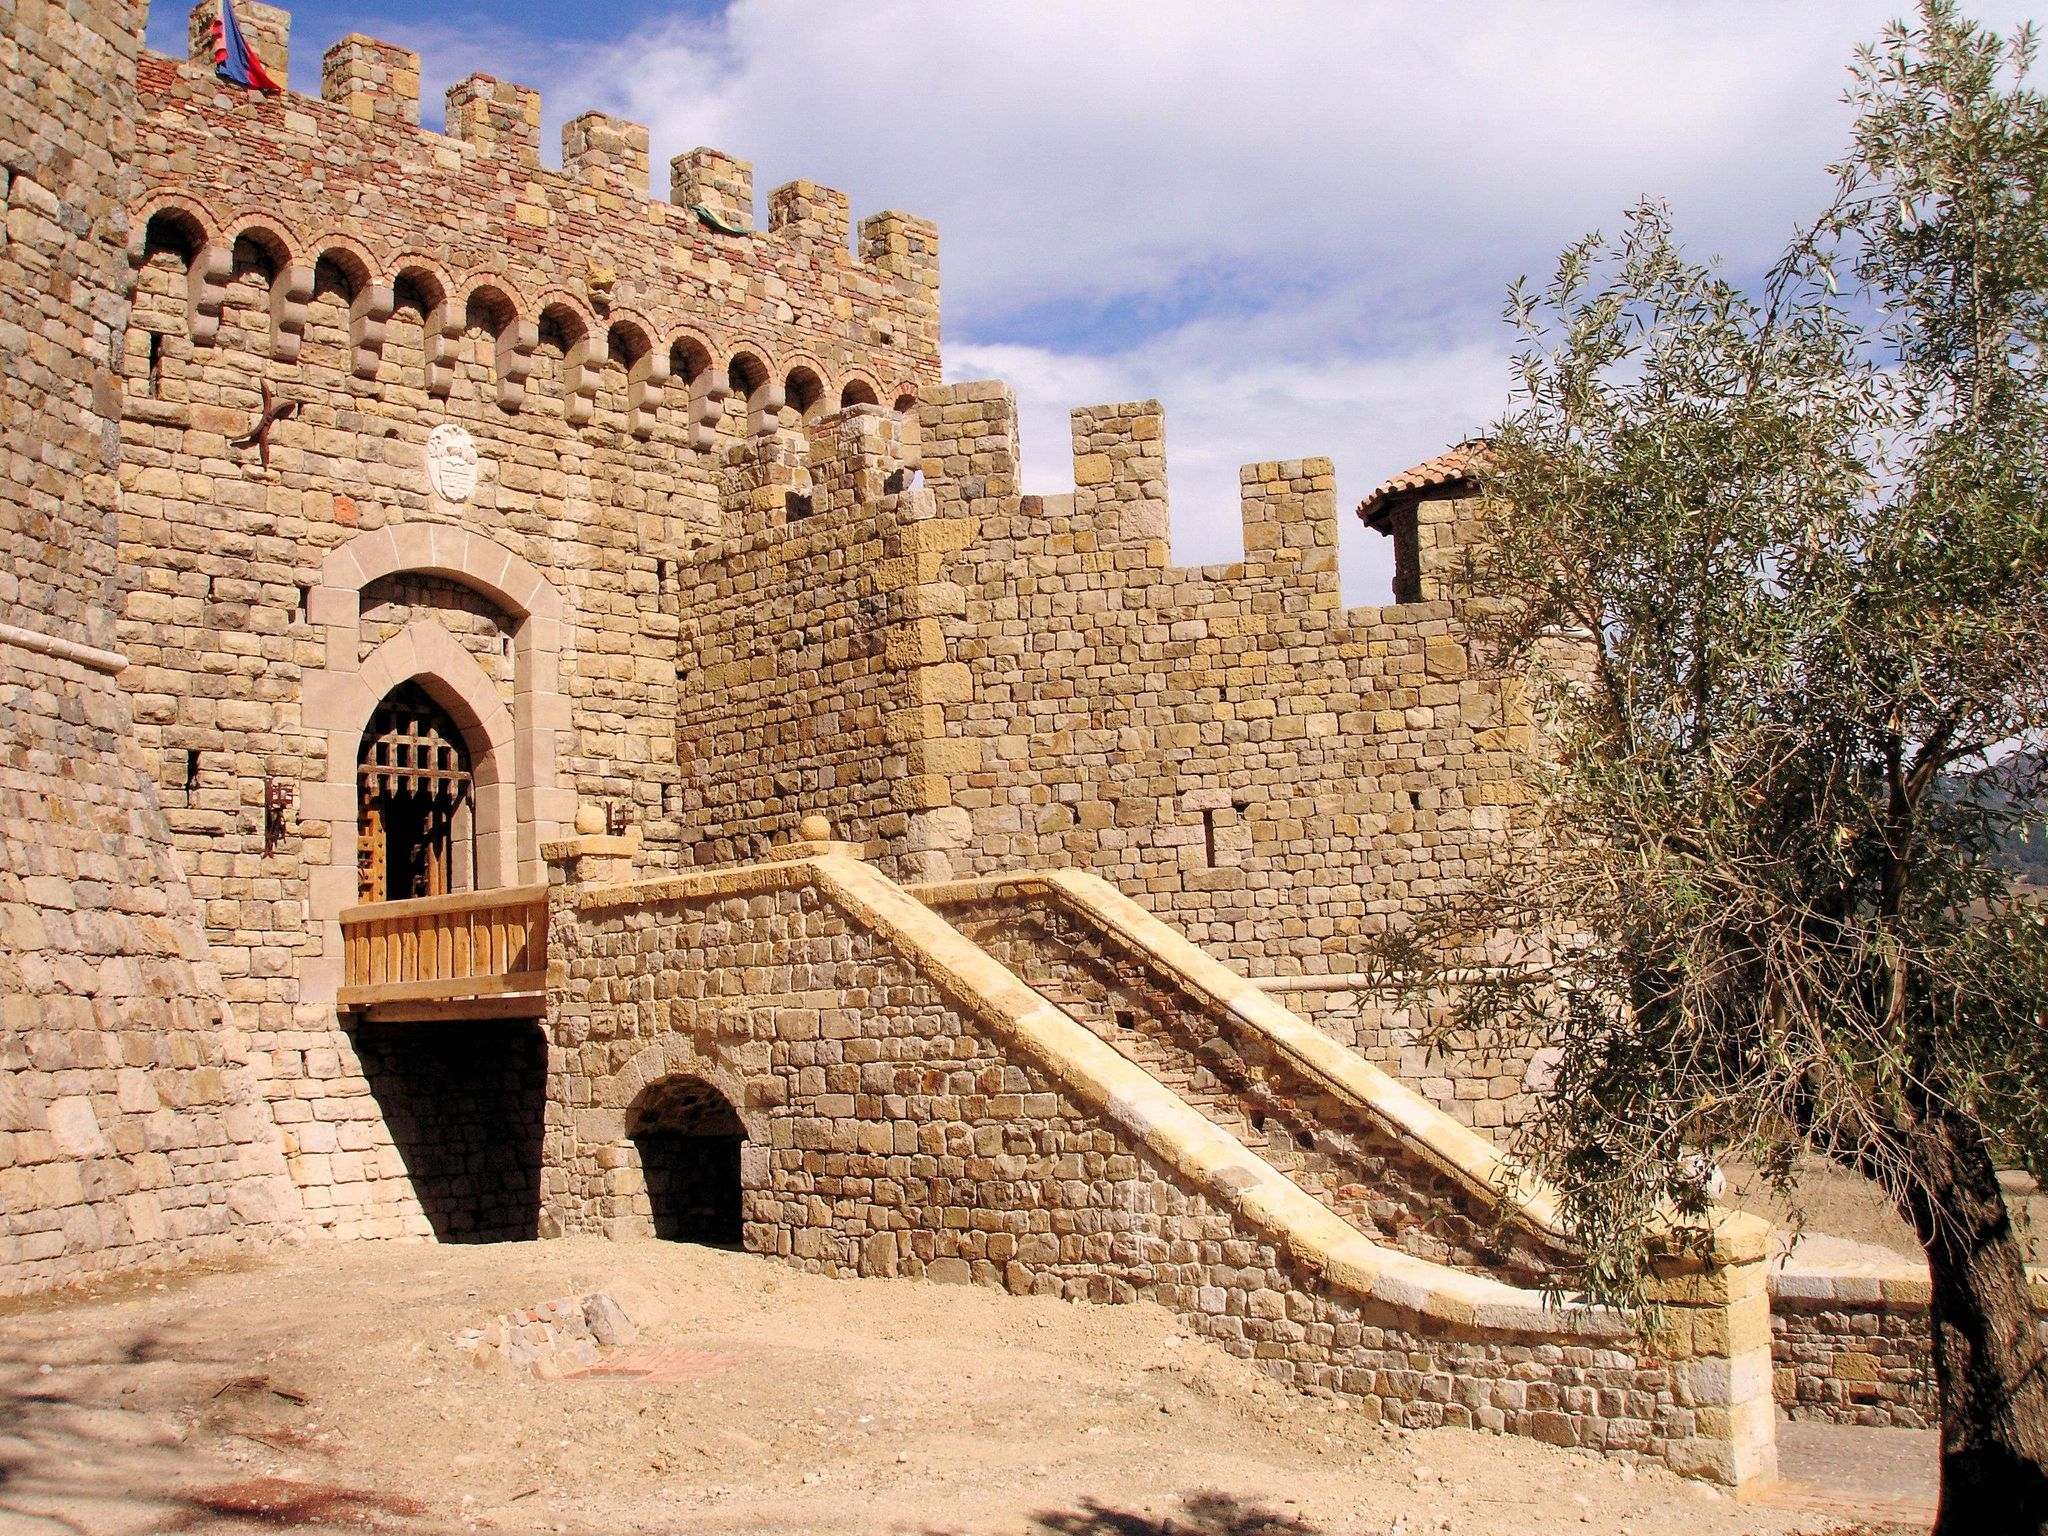 castello di amorosa2 Castello di Amorosa Winery in Napa Valley, California